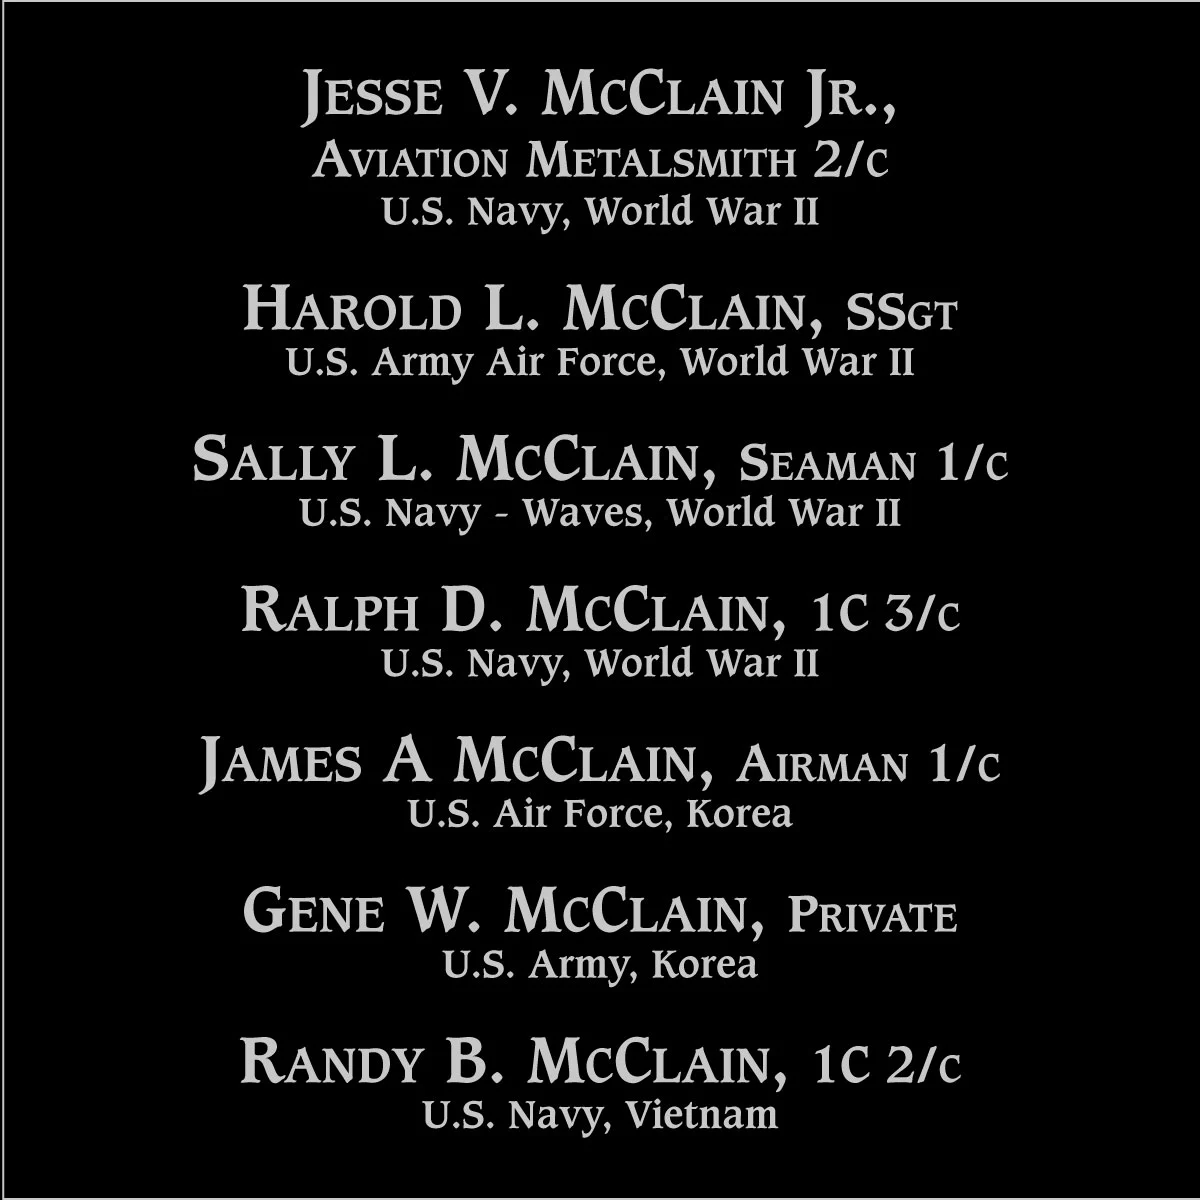 Jesse V McClain, jr